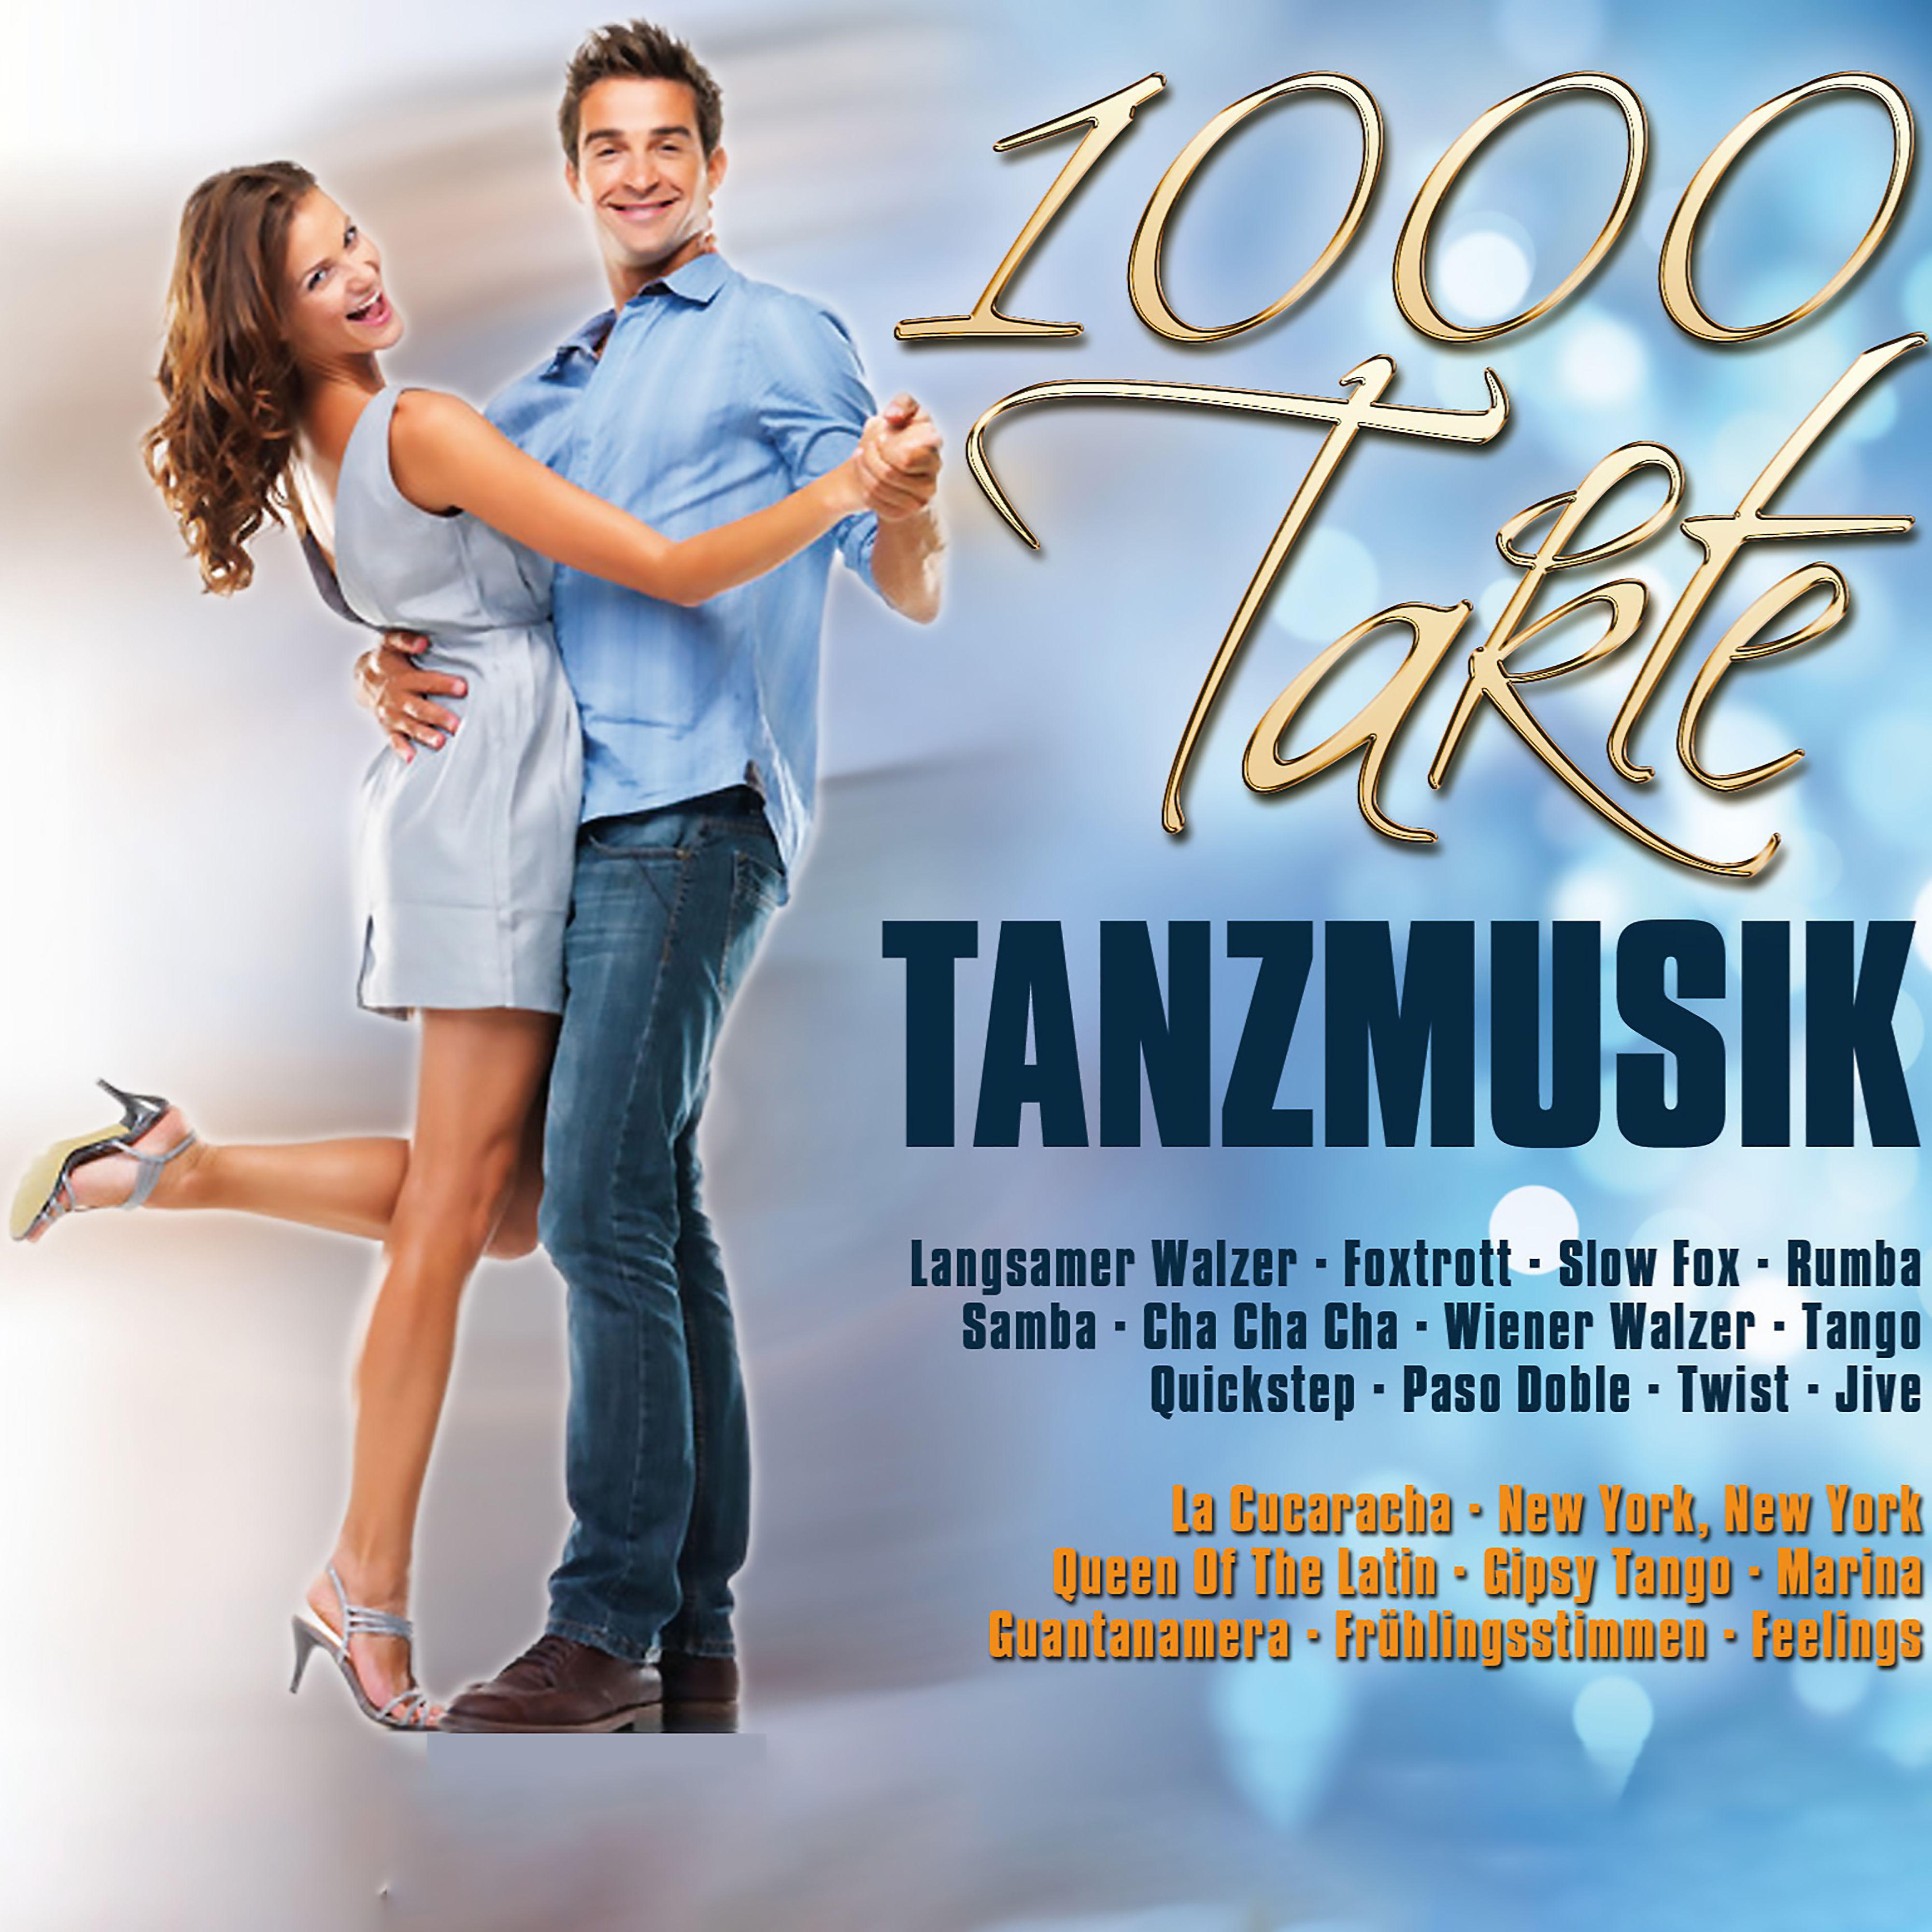 Постер альбома 1000 Takte Tanzmusik